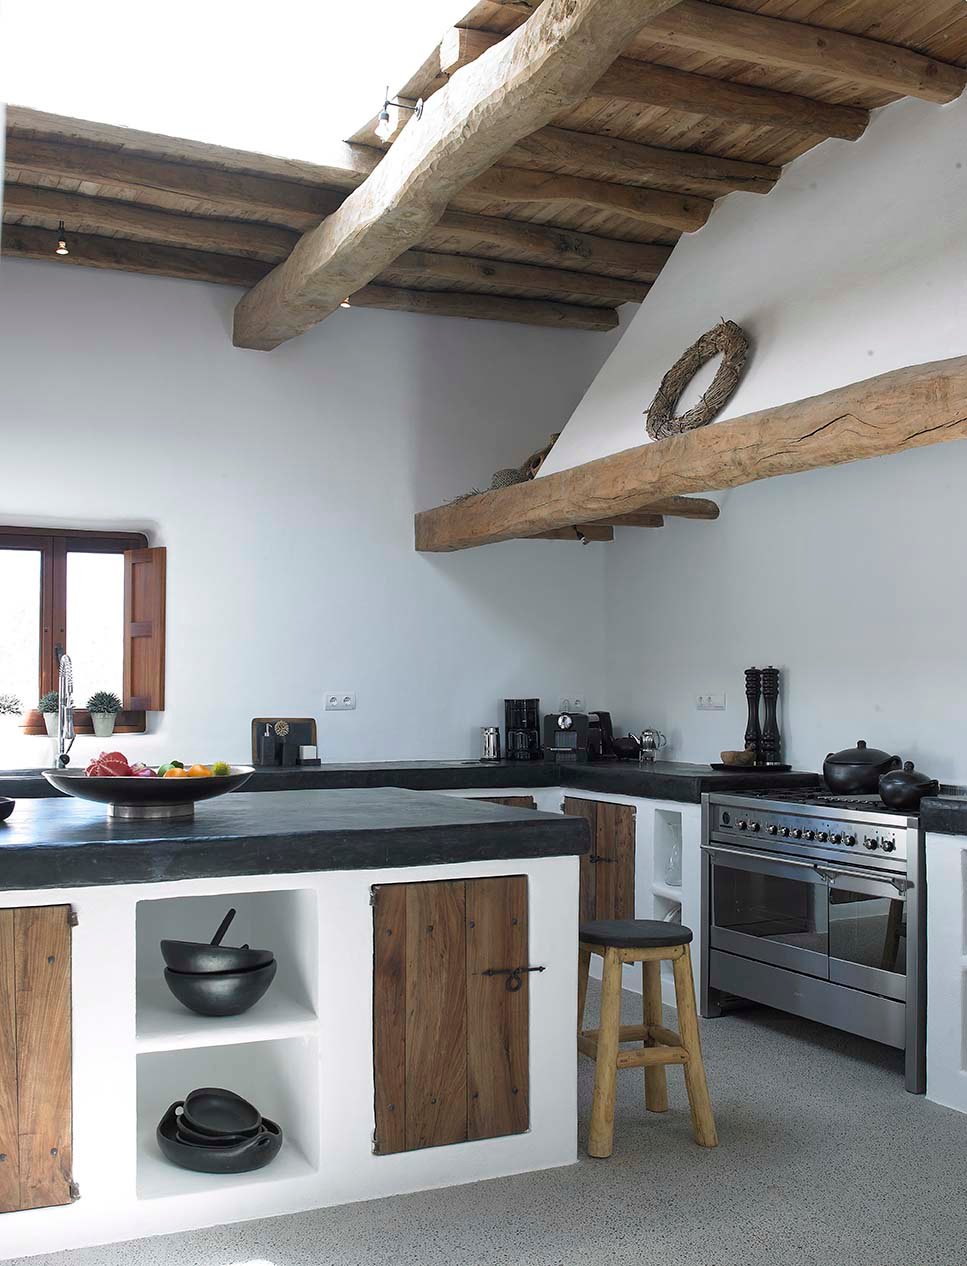 Bellissima cucina rustica con struttura muraria e isola centrale - colori bianco, nero e legno - pavimenti e top in cemento e soffitto con travi in legno